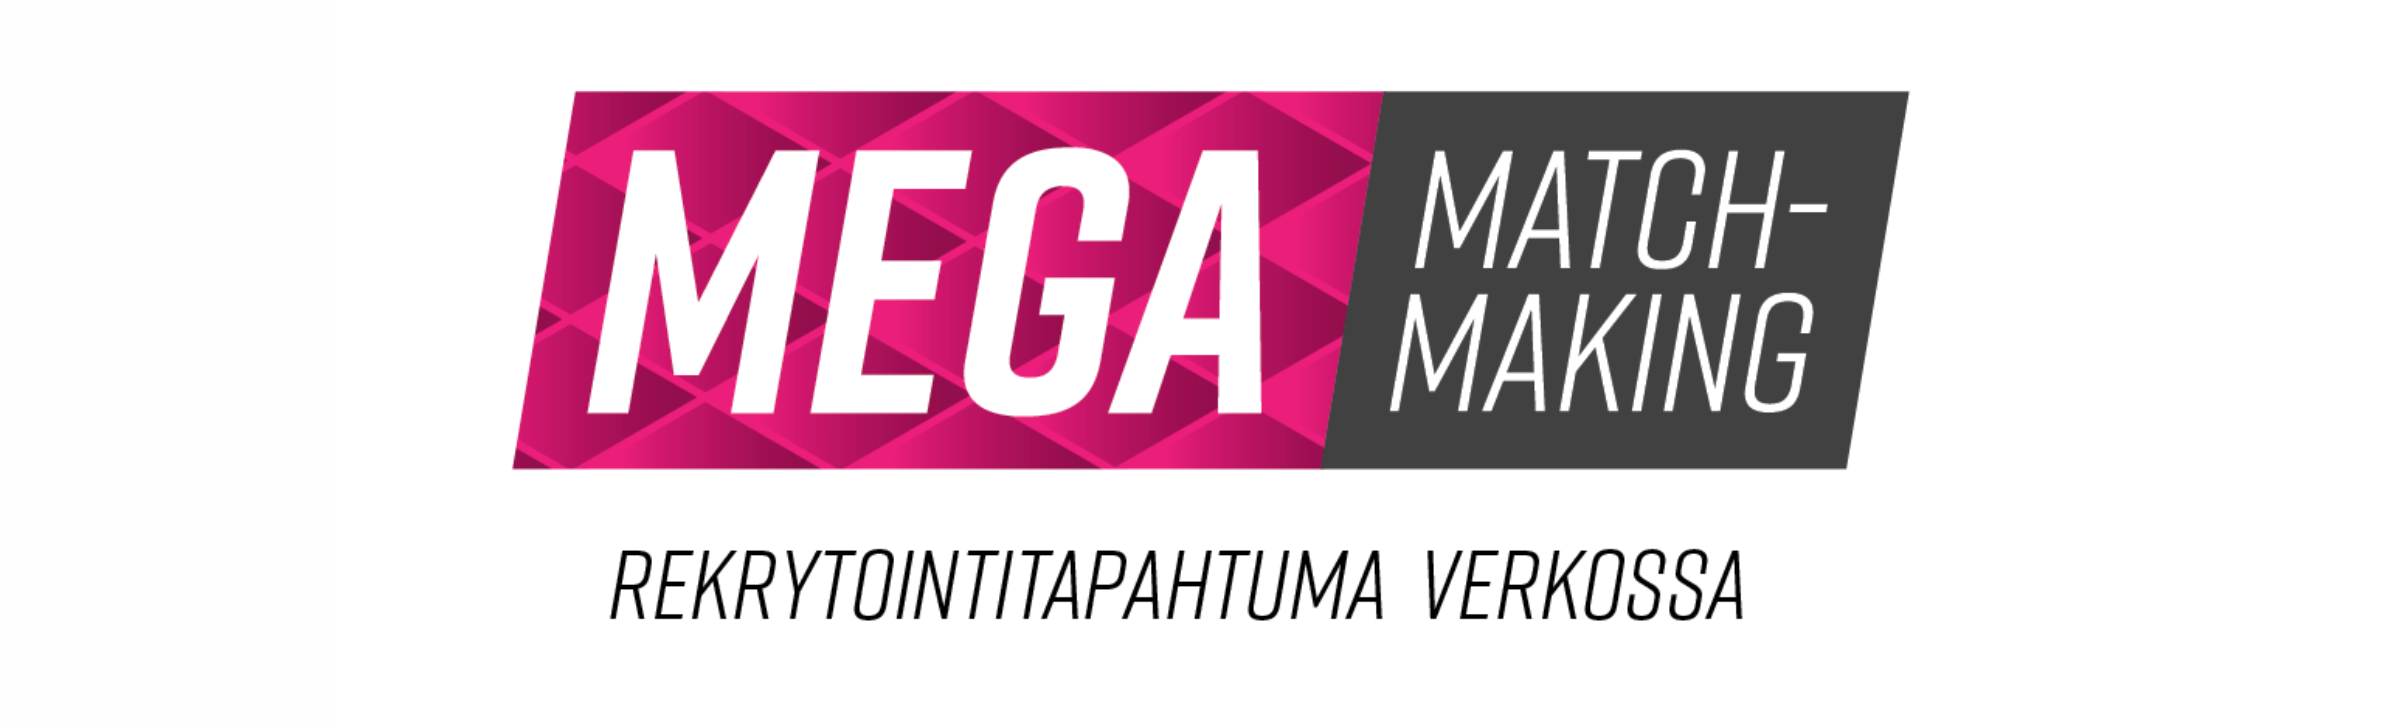 Mega Matchmaking banner